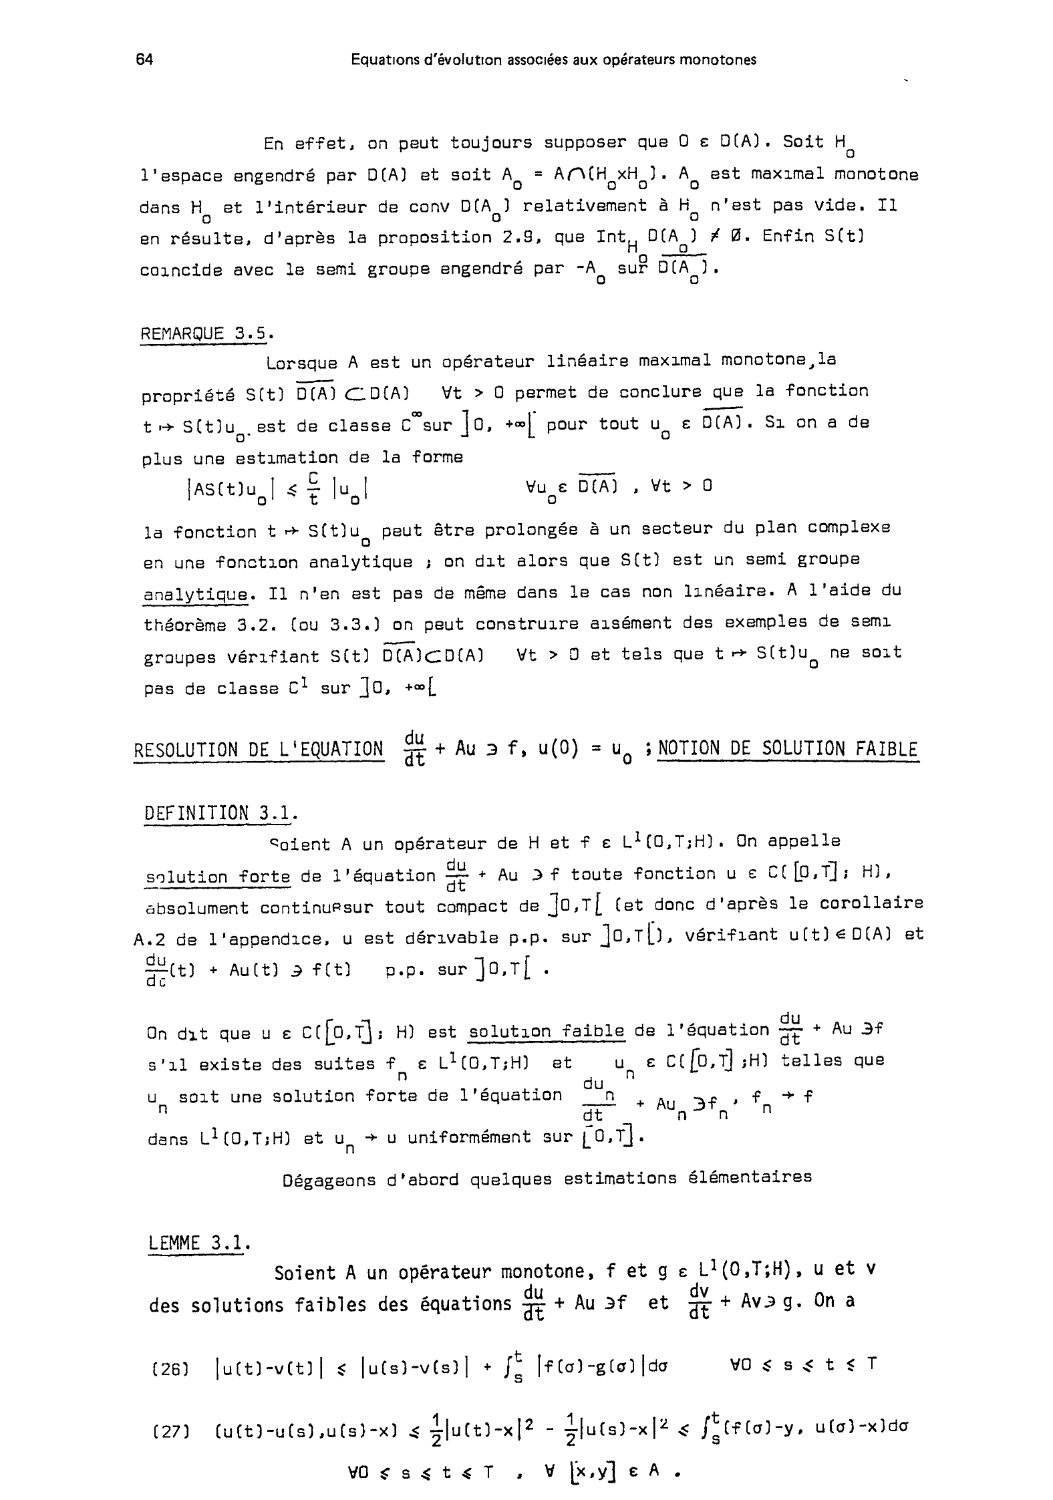 2. Résolution de 1'équation du/dt + Au etc. ; notion de solution faible